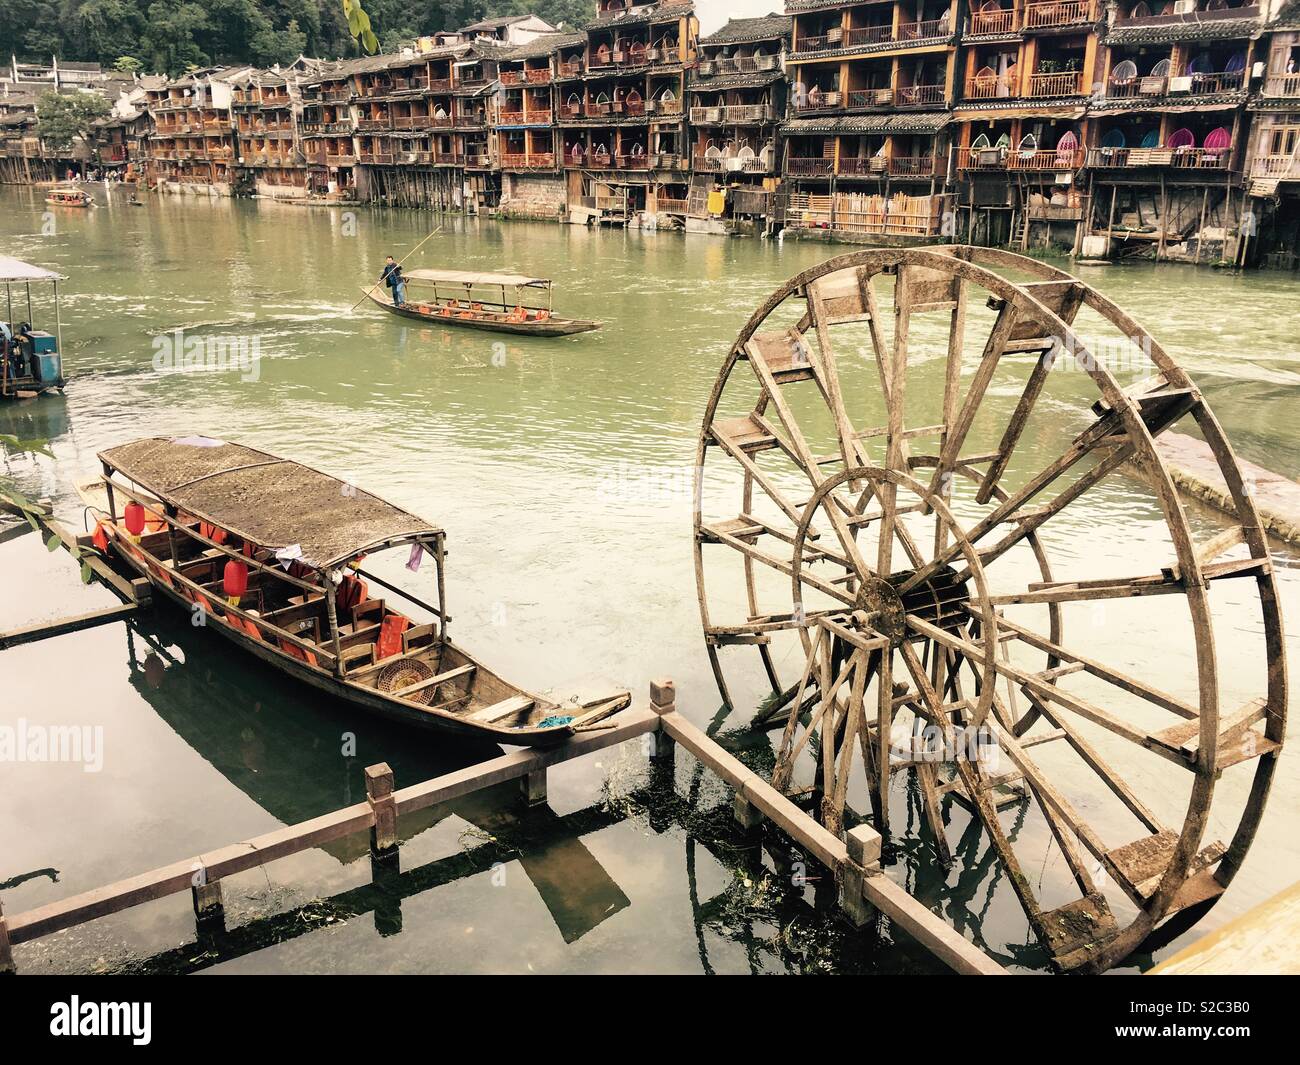 Riverside view at Fenghuang water village, Hunan, China Stock Photo